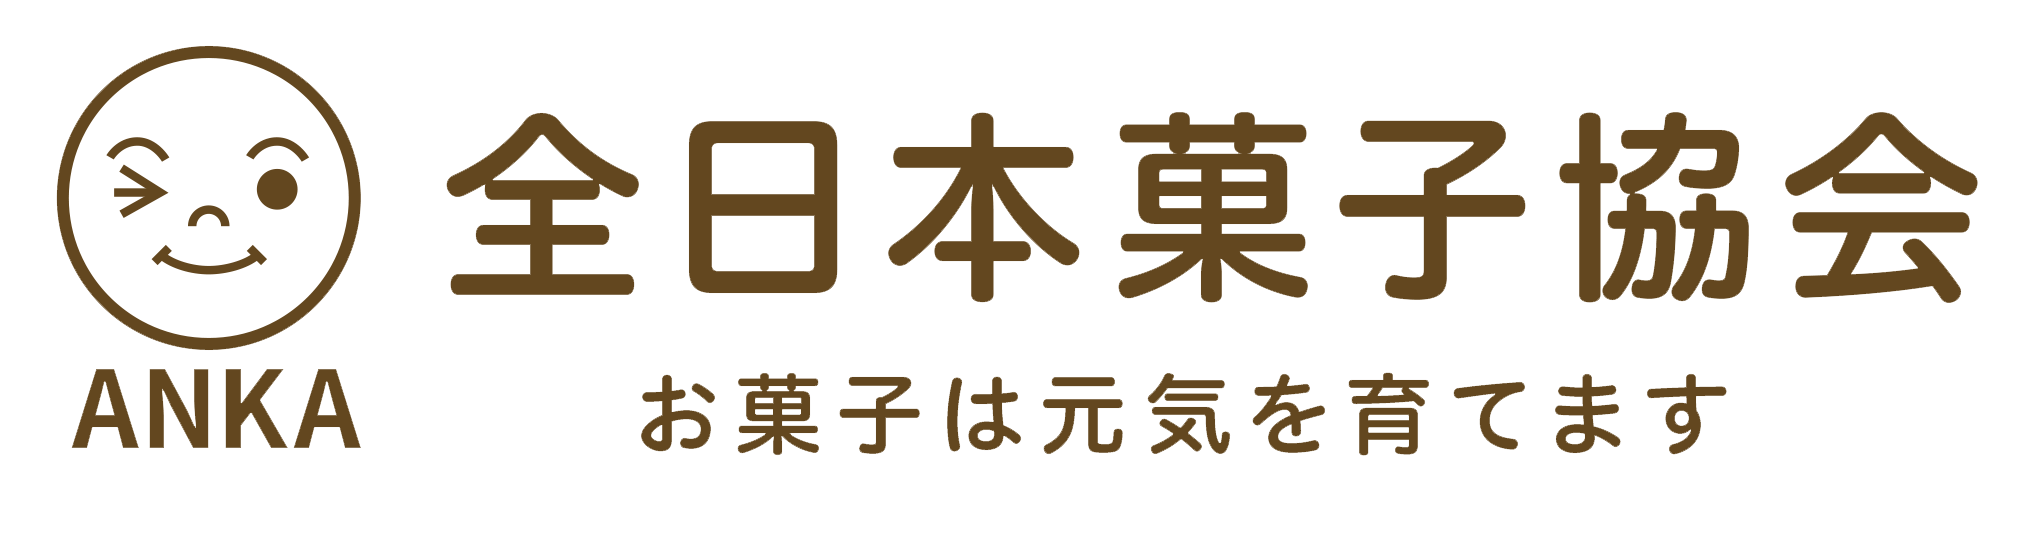 全日本お菓子協会ロゴ